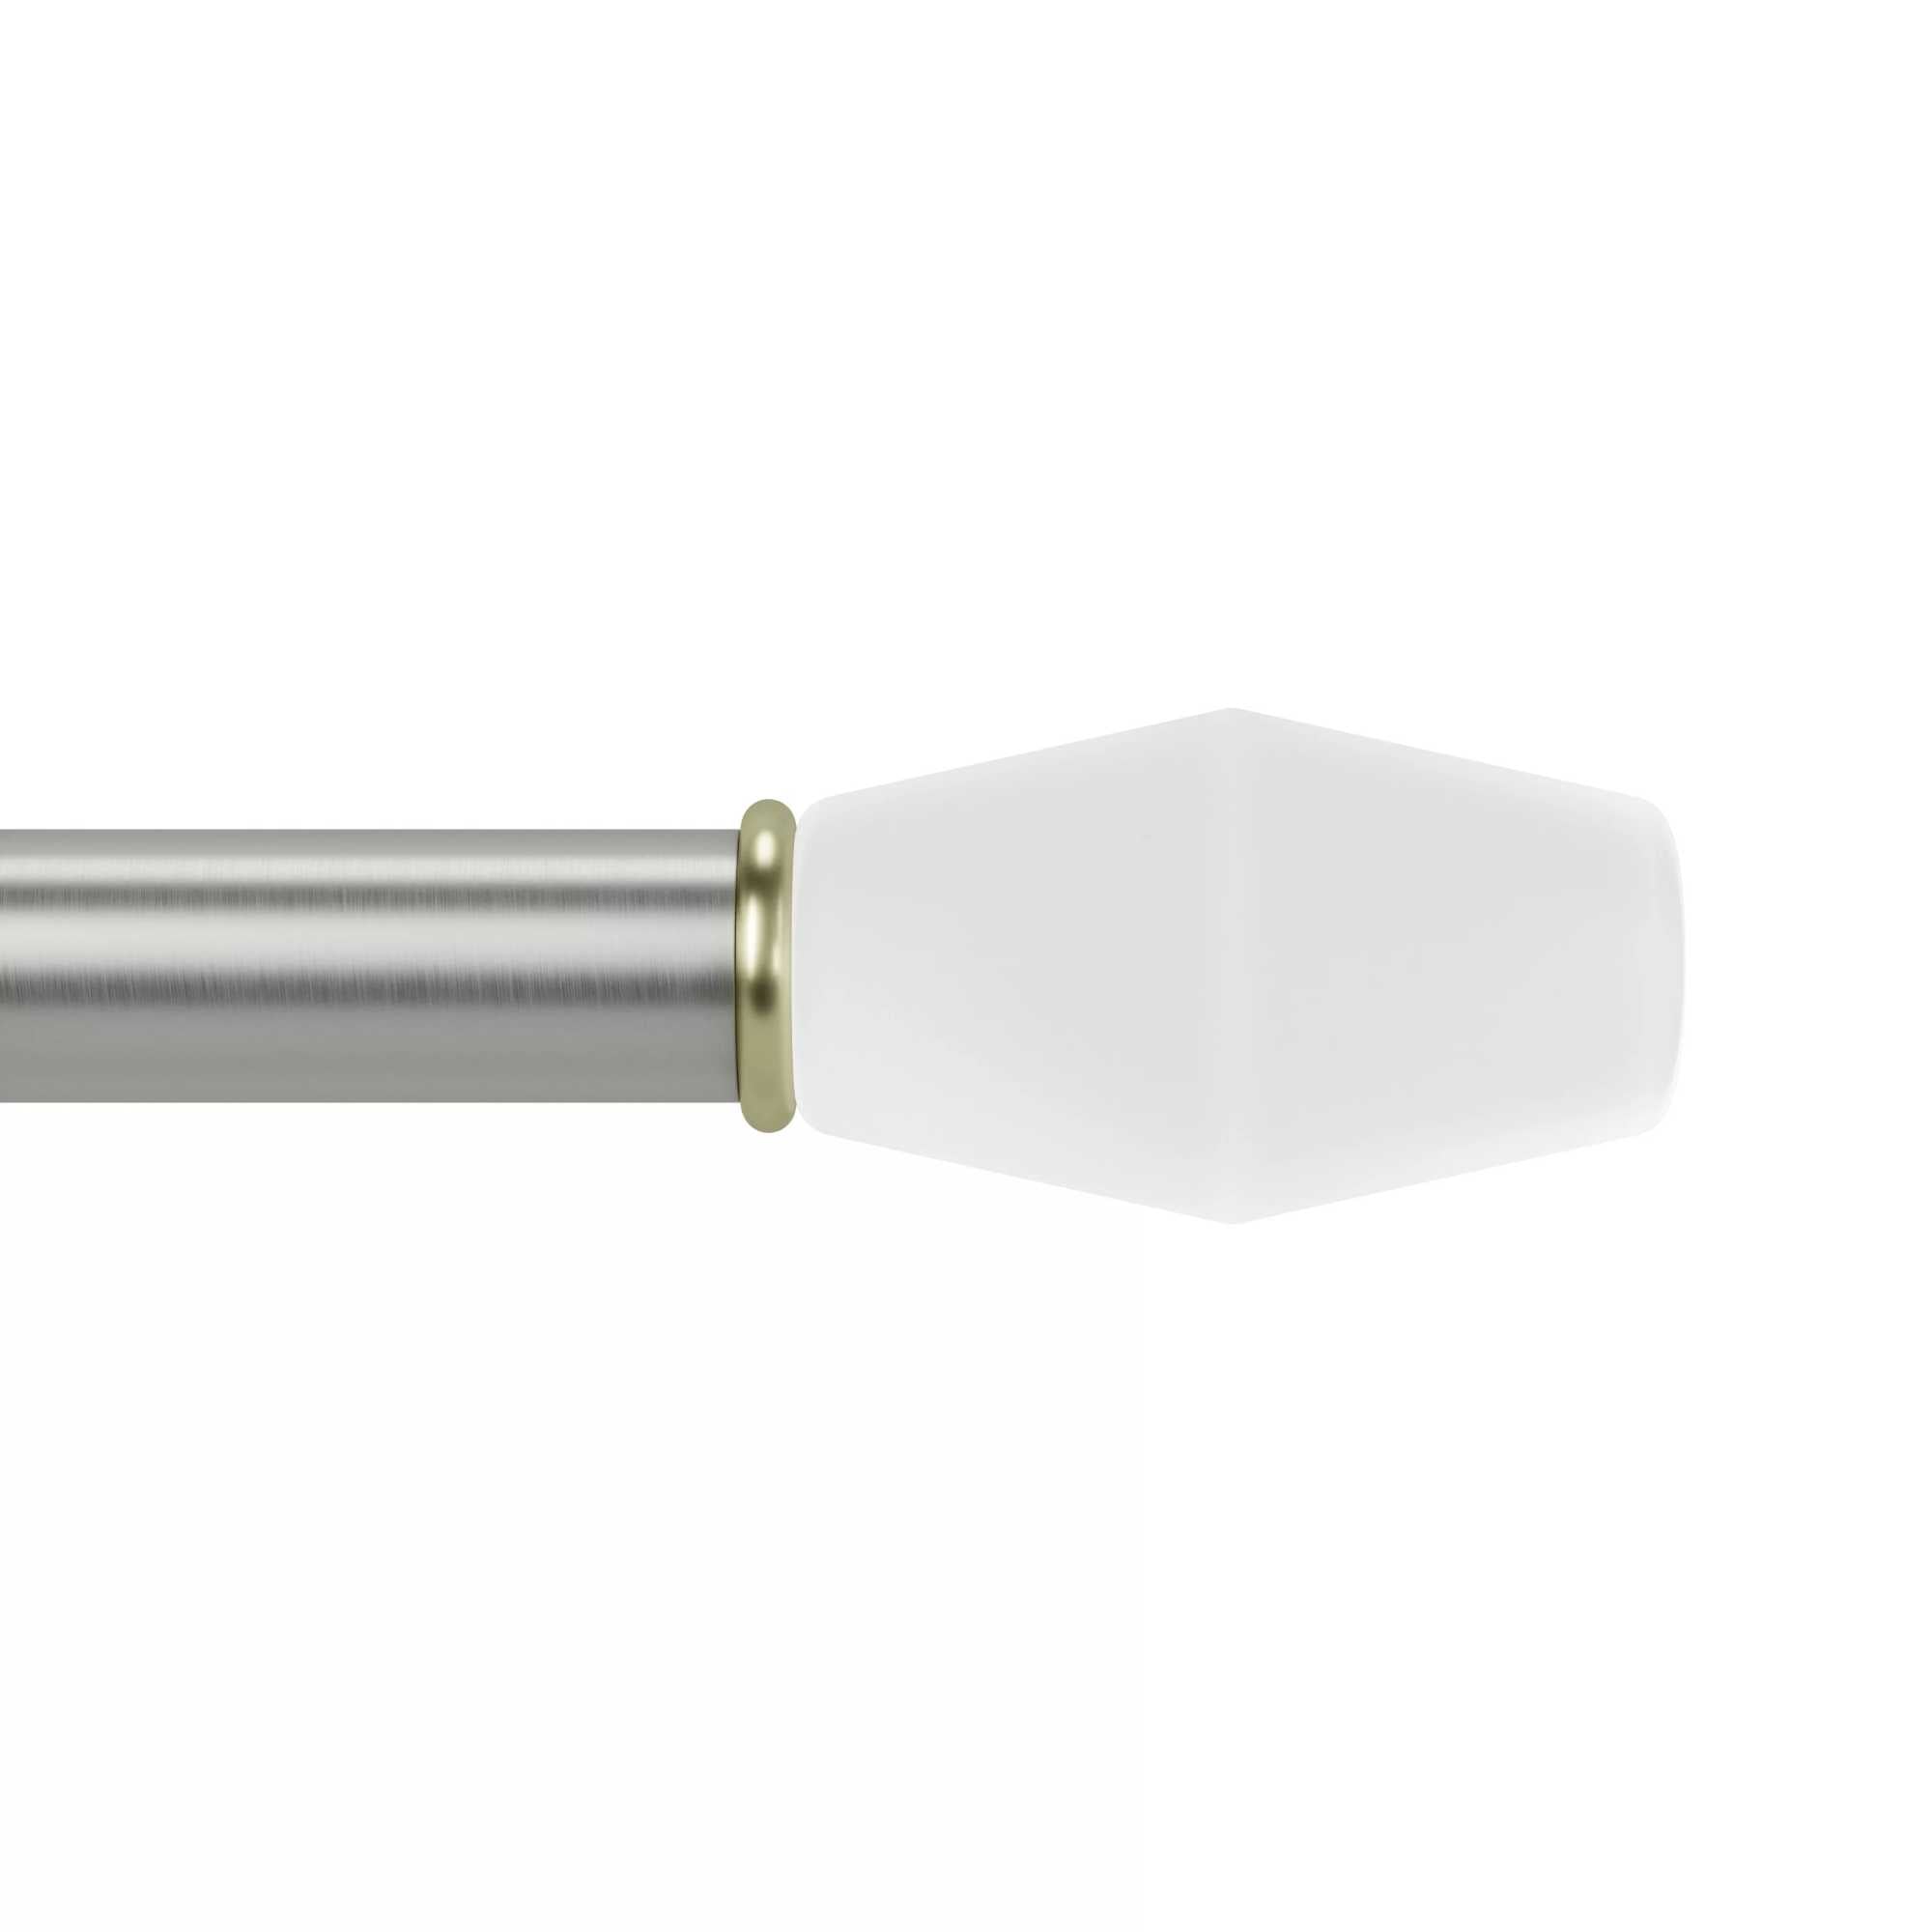 Umbra Fade Knob 1" Adjustable Curtain Rod (91-183cm) , Nickel/Steel